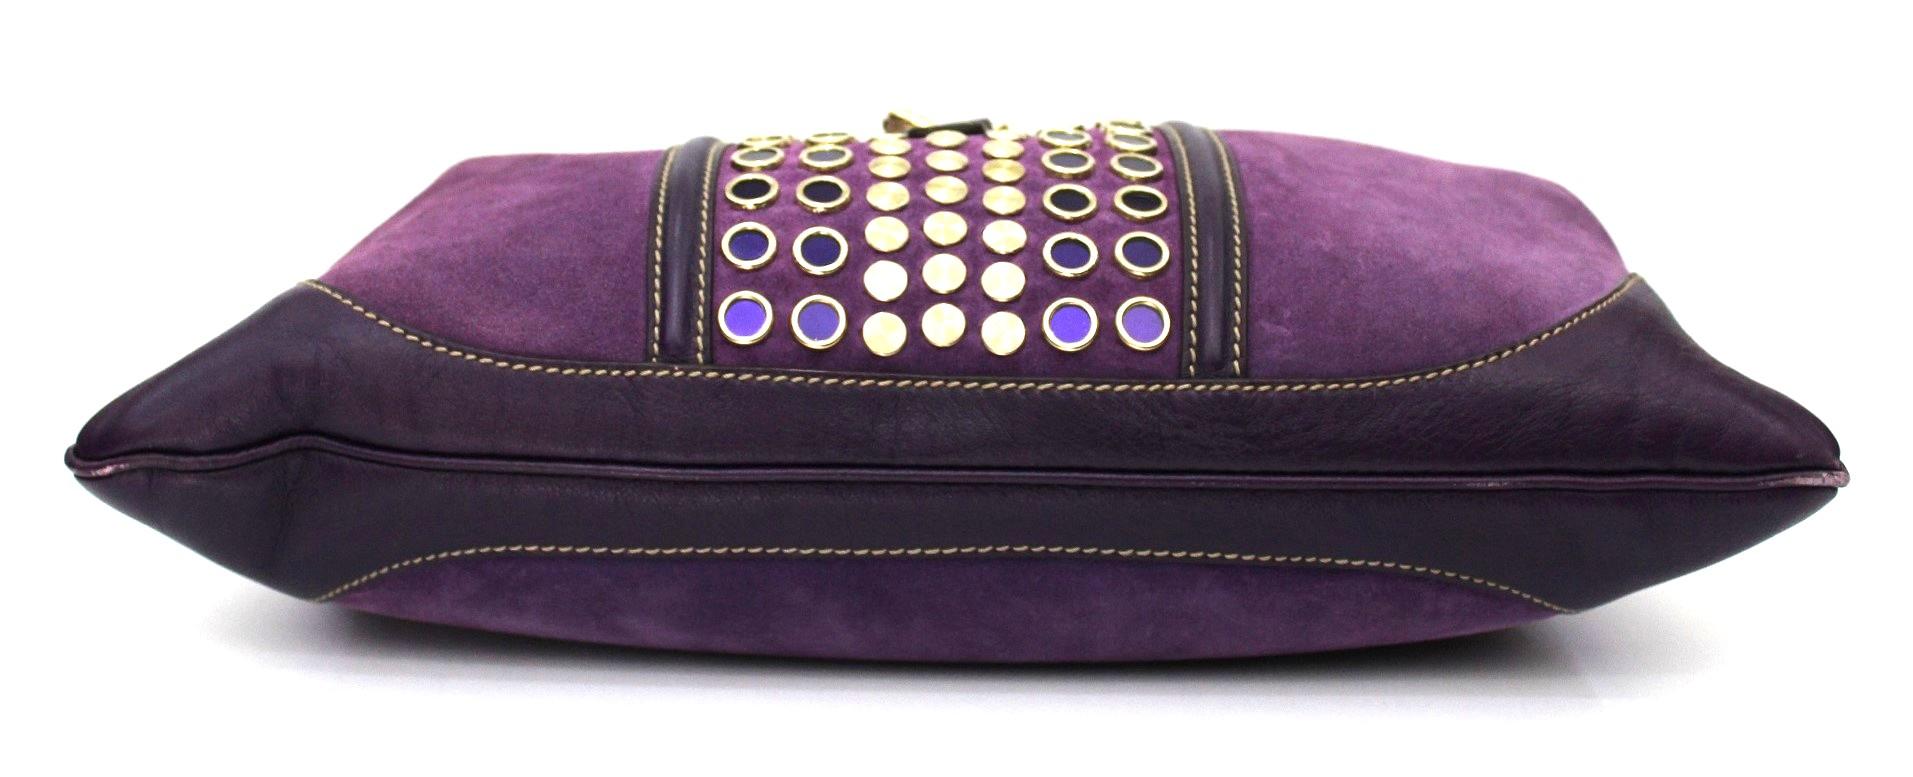 purple suede bag